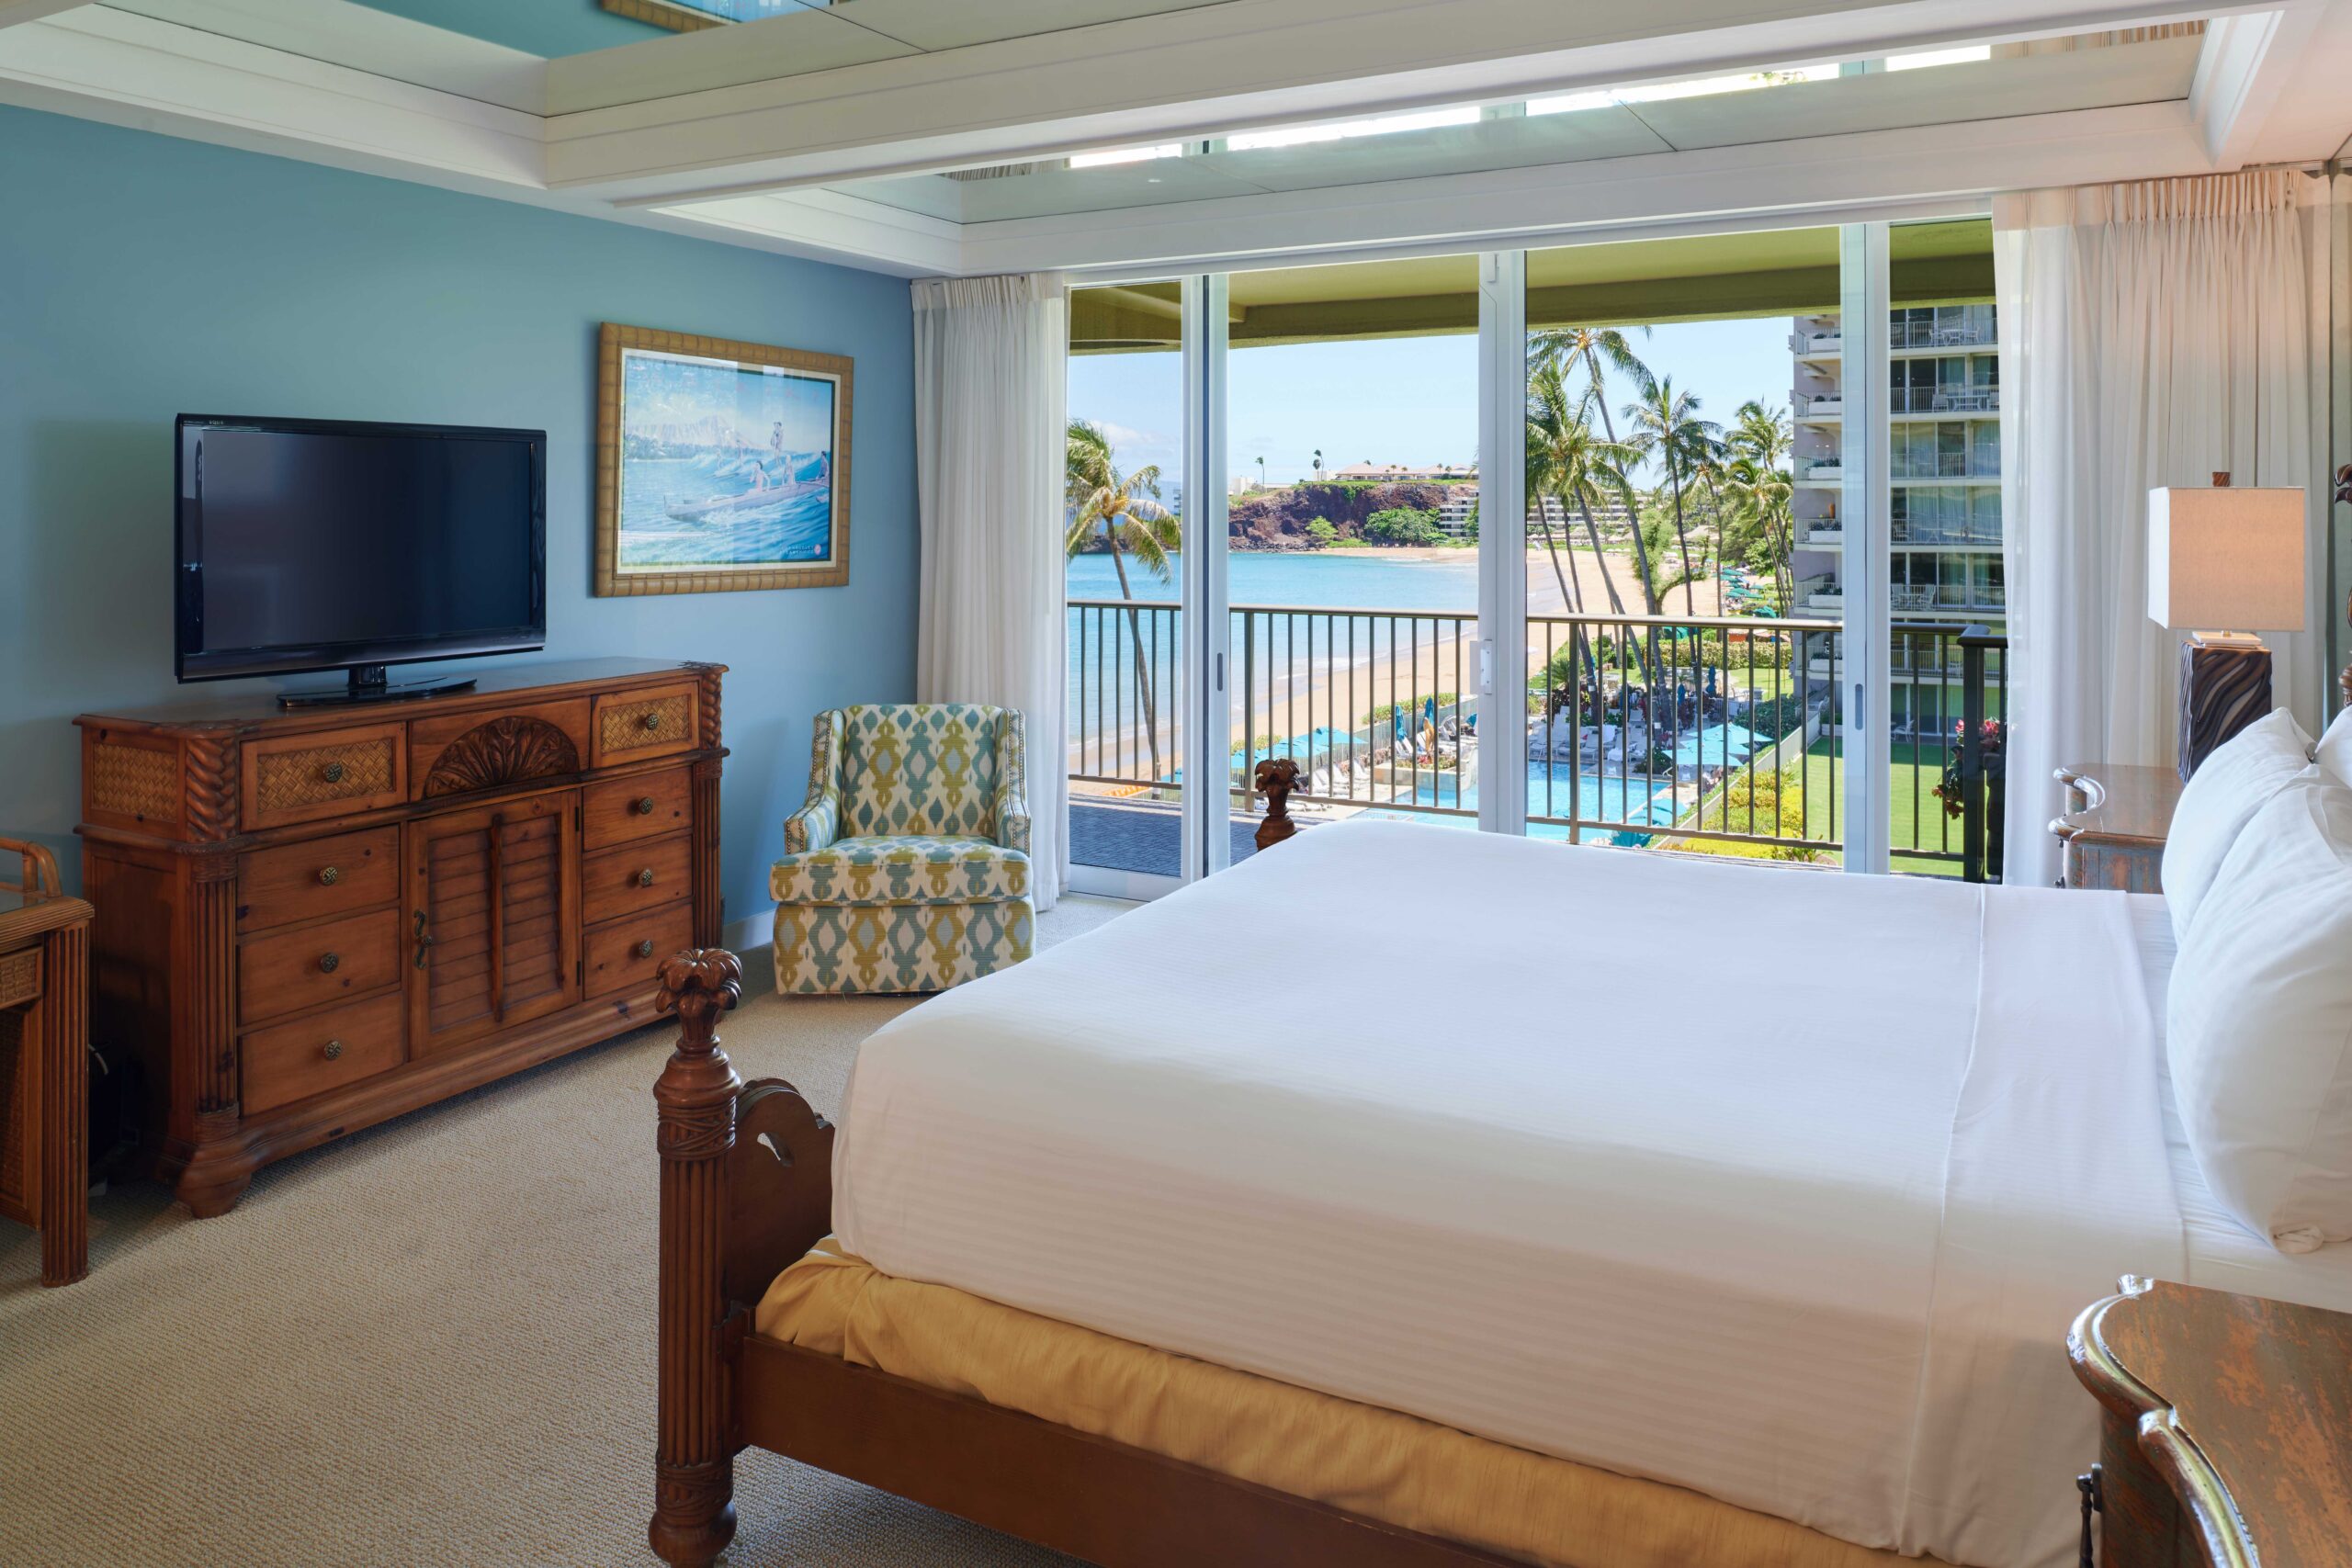 2-bedroom oceanfront premium master bedroom with king bed, TV, dresser, and open balcony